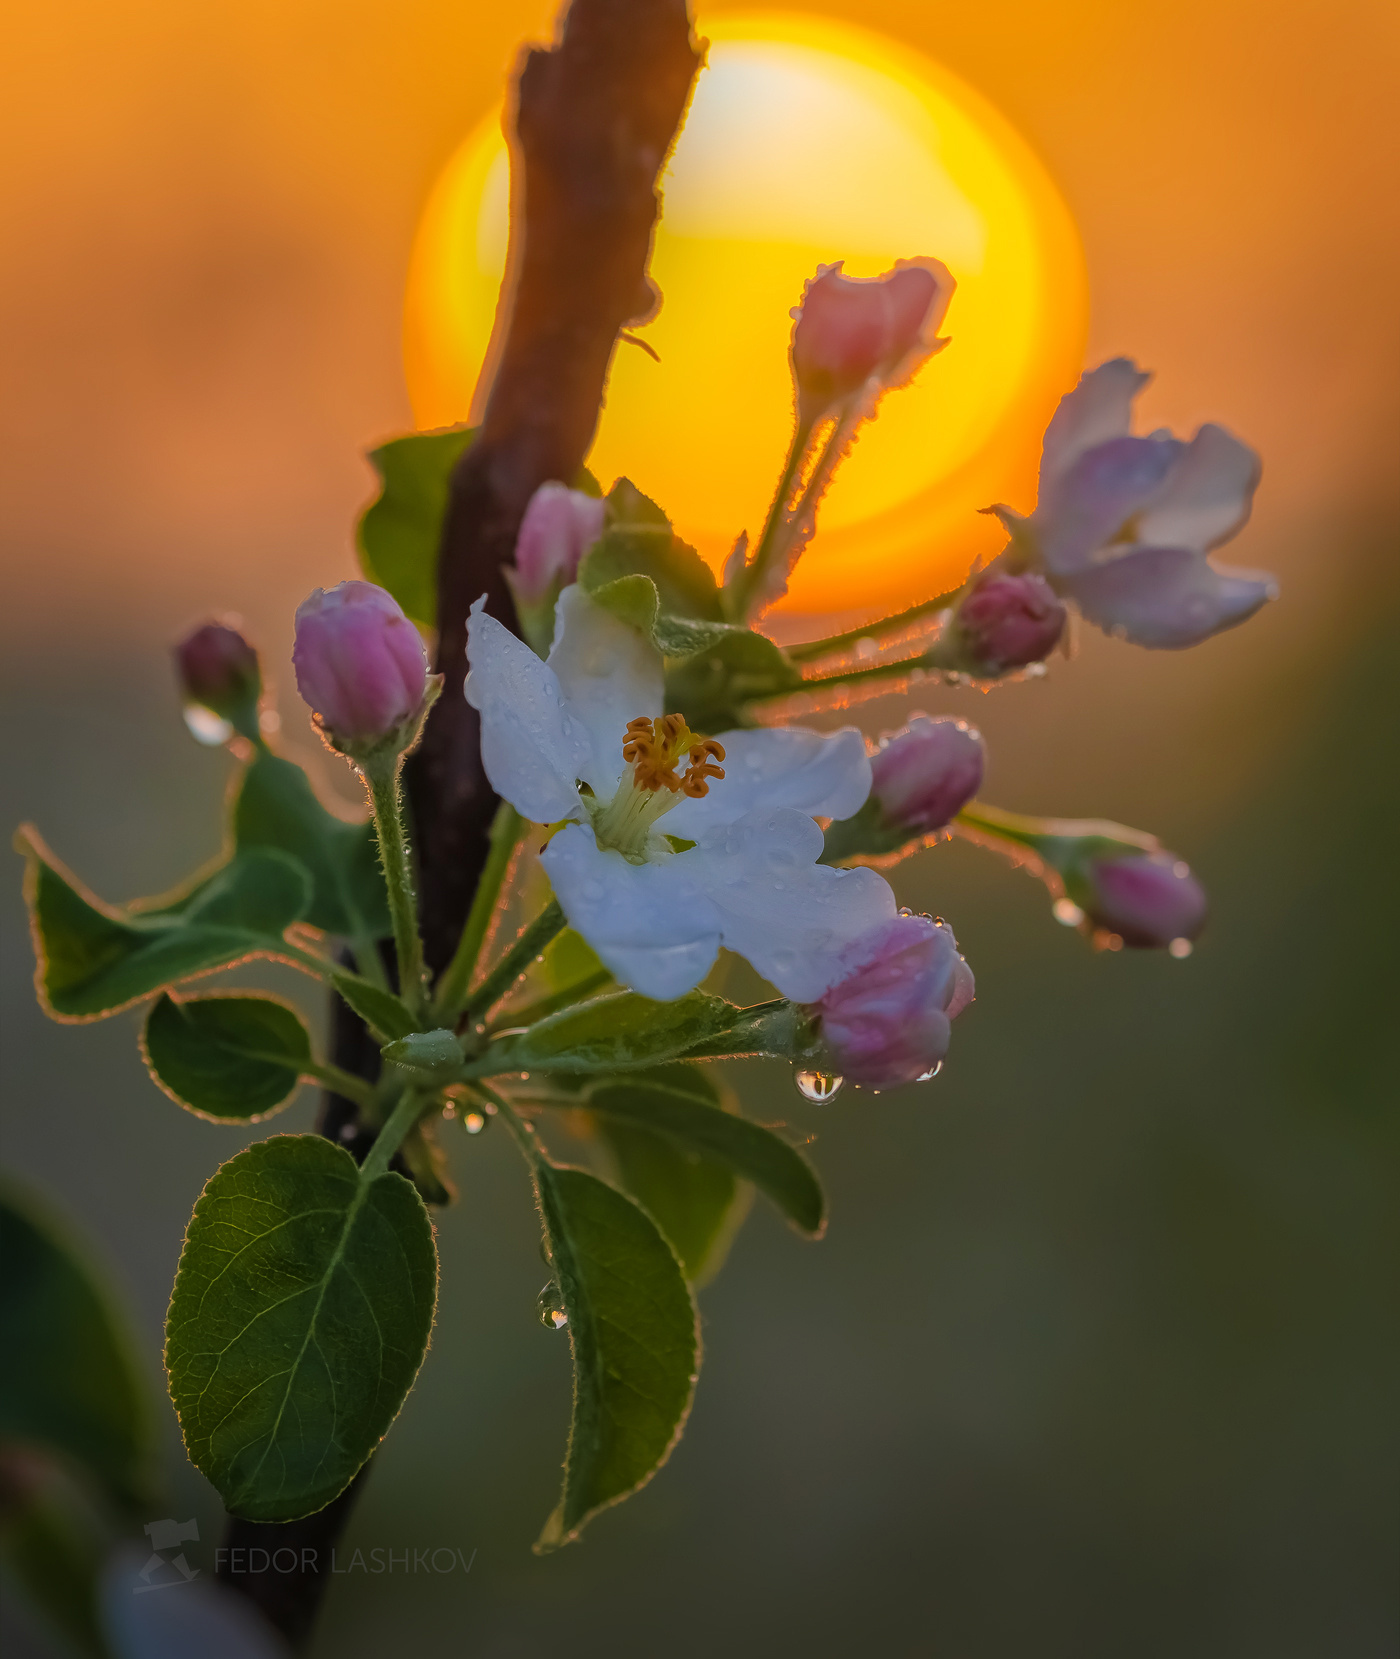 Пробуждение весны Лебедянский район Липецкая область сад цветение фруктовый рассвет солнце макро яблони яблоня цветок садовое сельское хозяйство